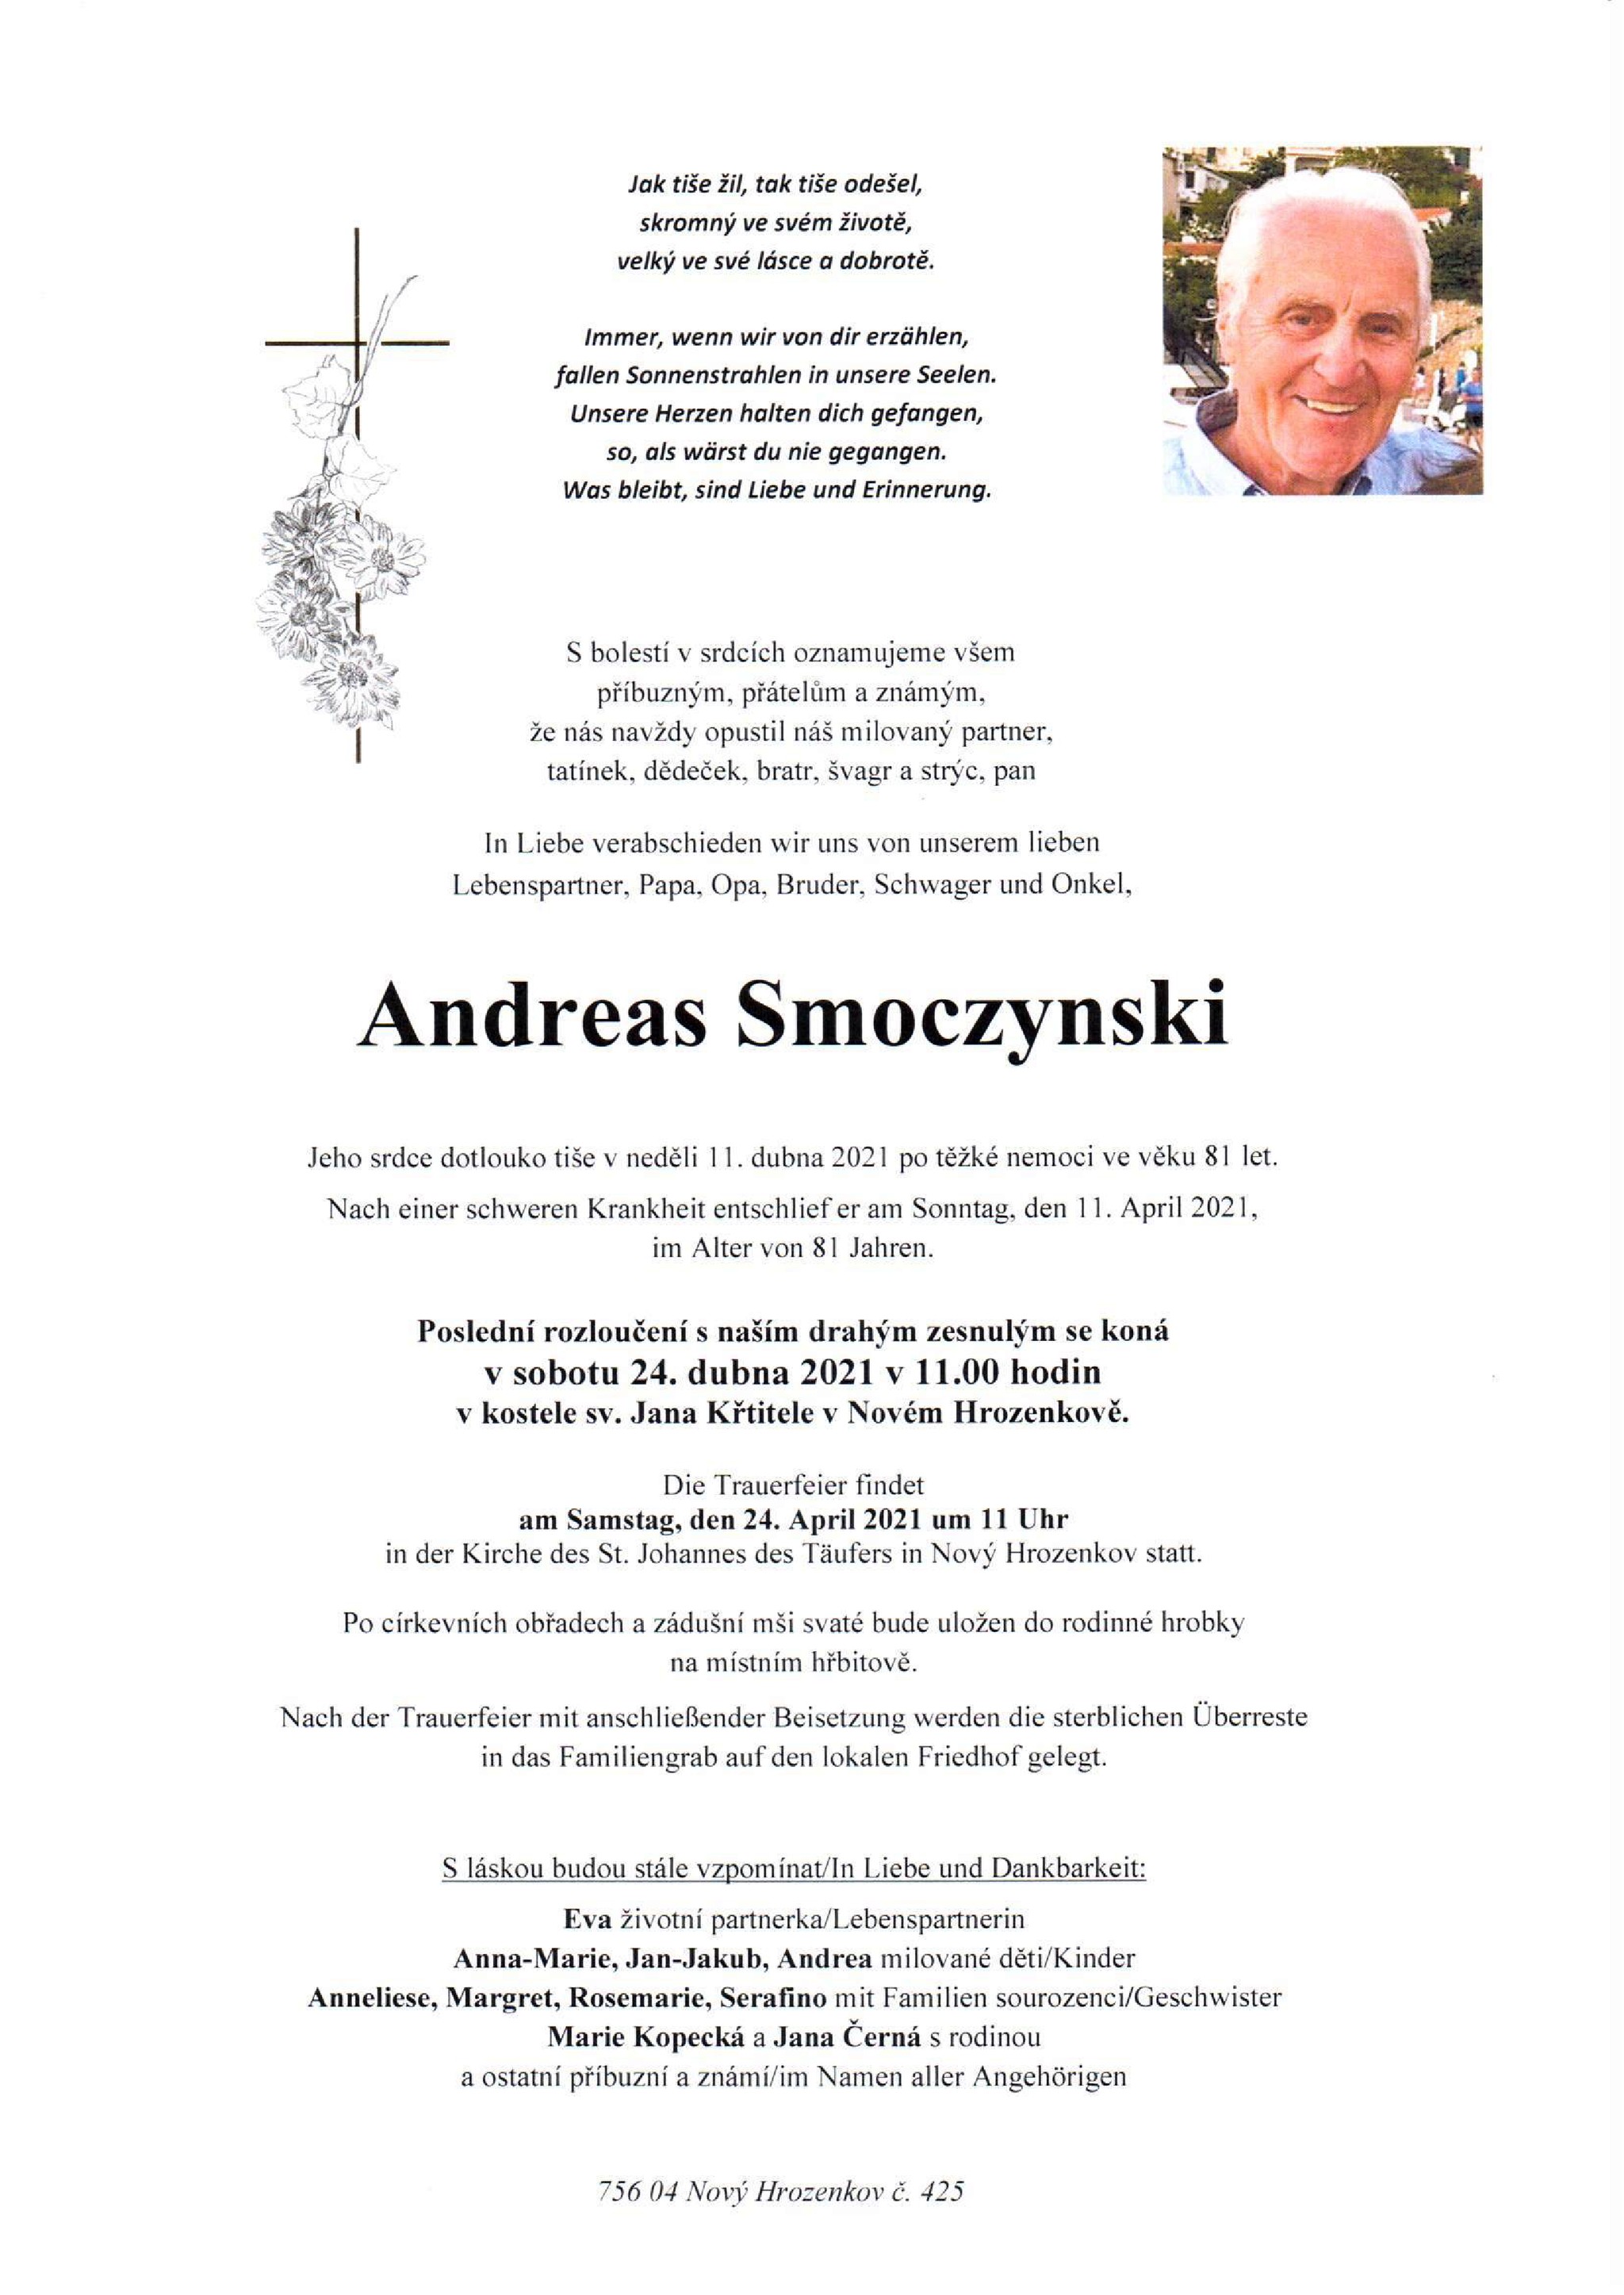 Andreas Smoczynski